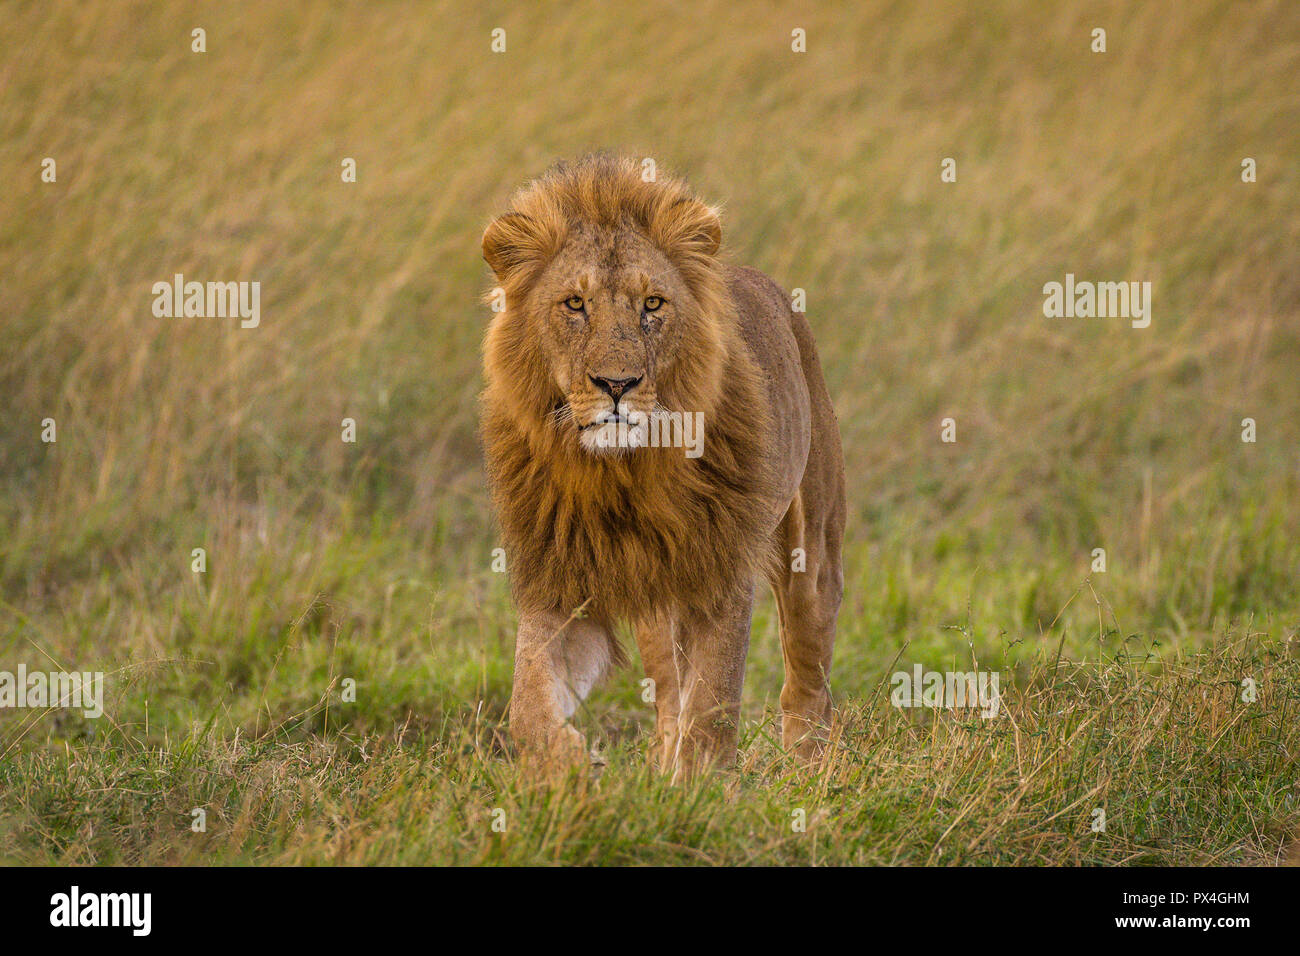 This image of Lion is taken at Masai Mara in Kenya. Stock Photo